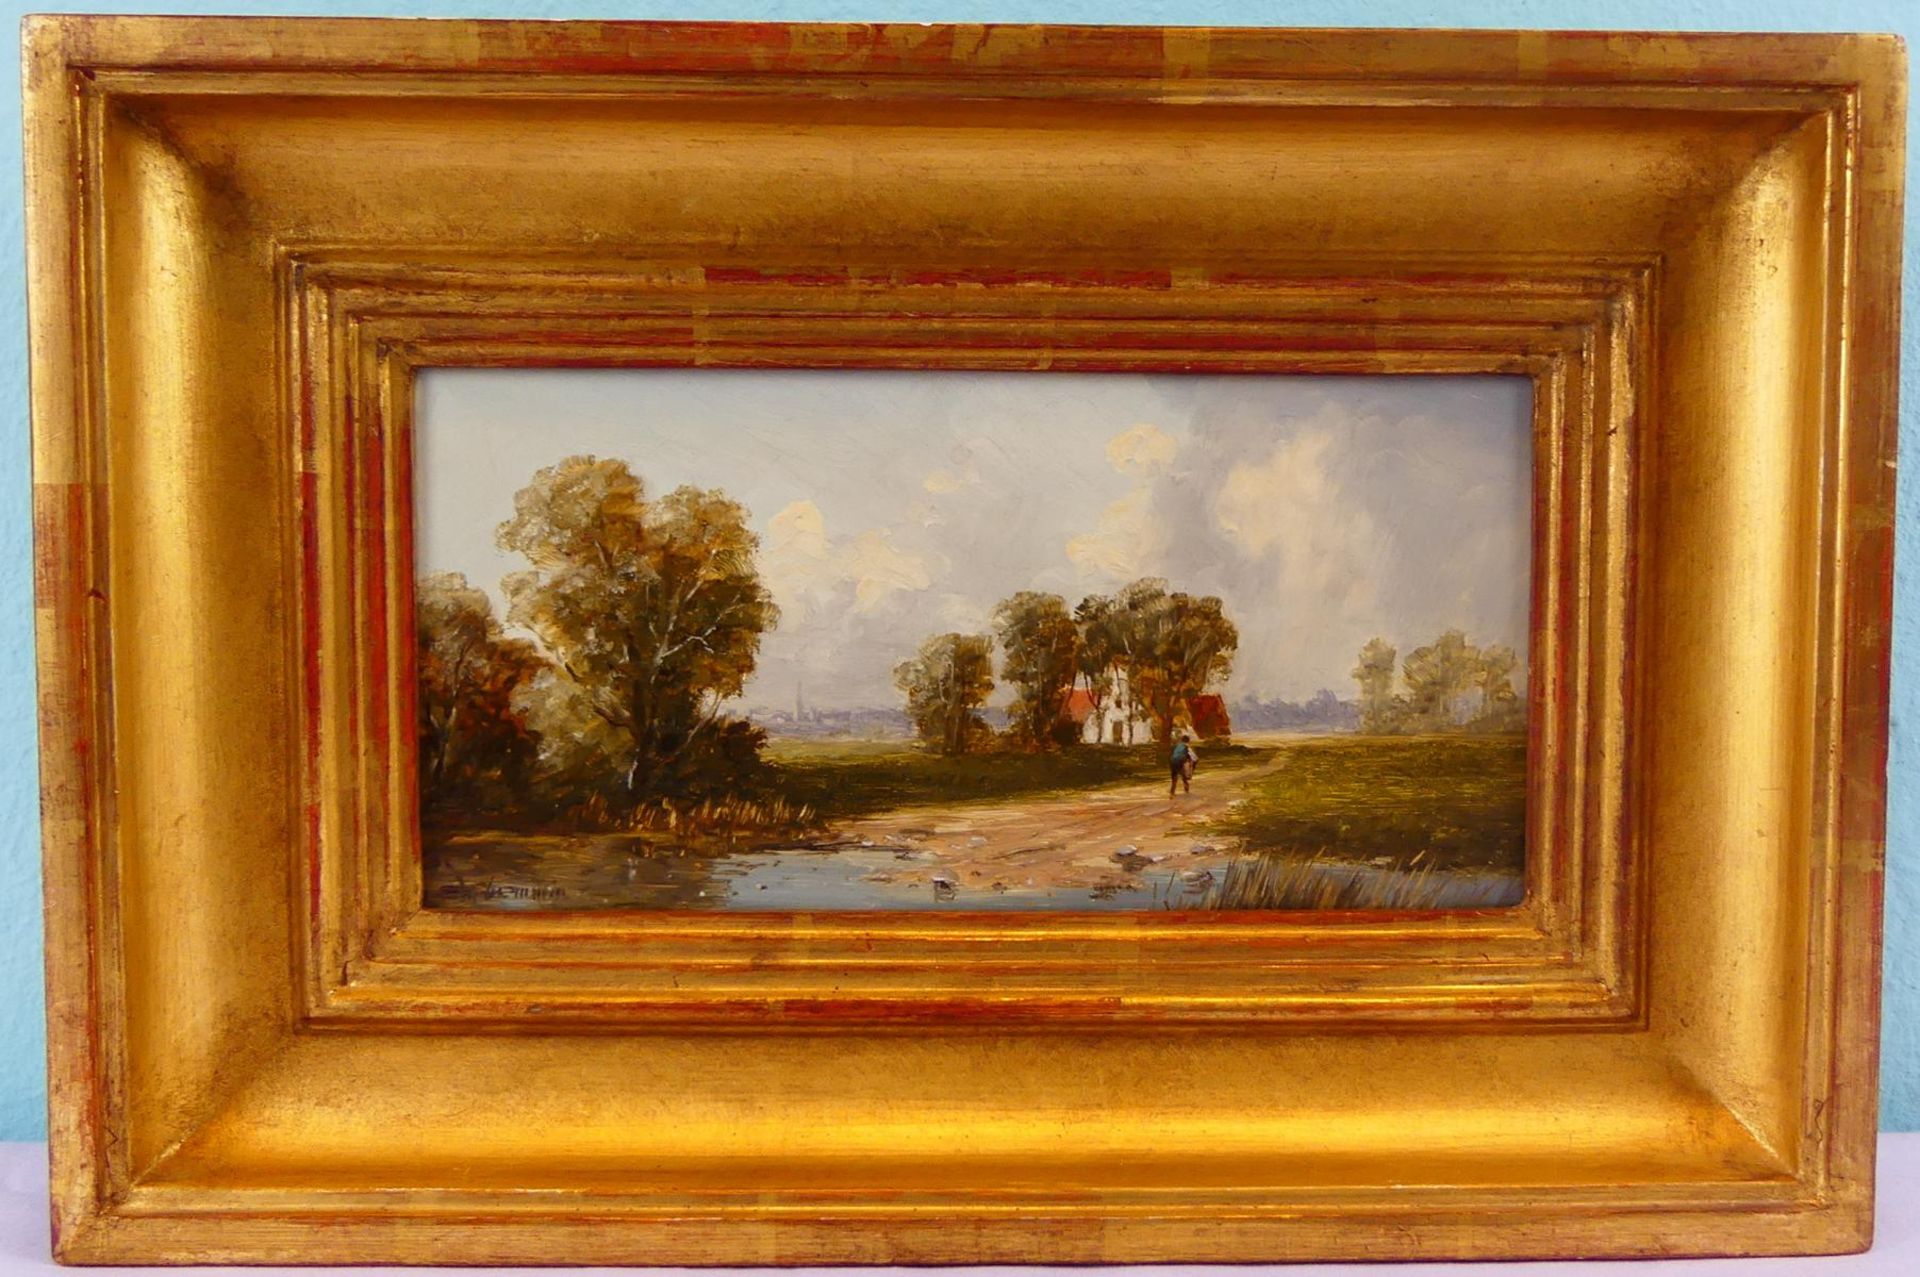 ERICH DEMMIN (1911-1997), "Landschaft", Öl/Holz, unten links signiert,